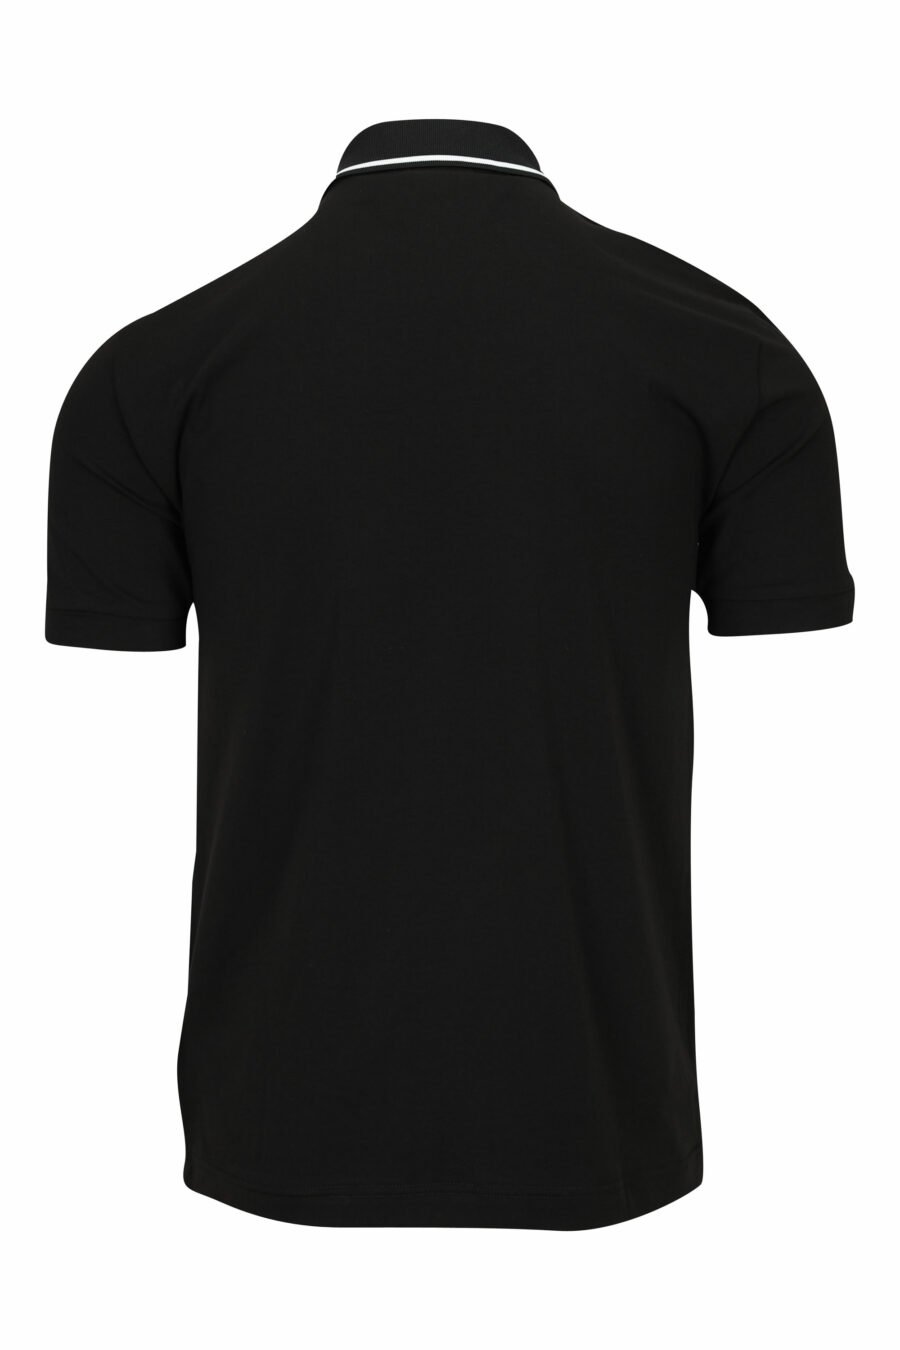 Schwarzes Poloshirt mit Mini-Logo "lux identity" auf der Schulterpartie - 8058947458943 1